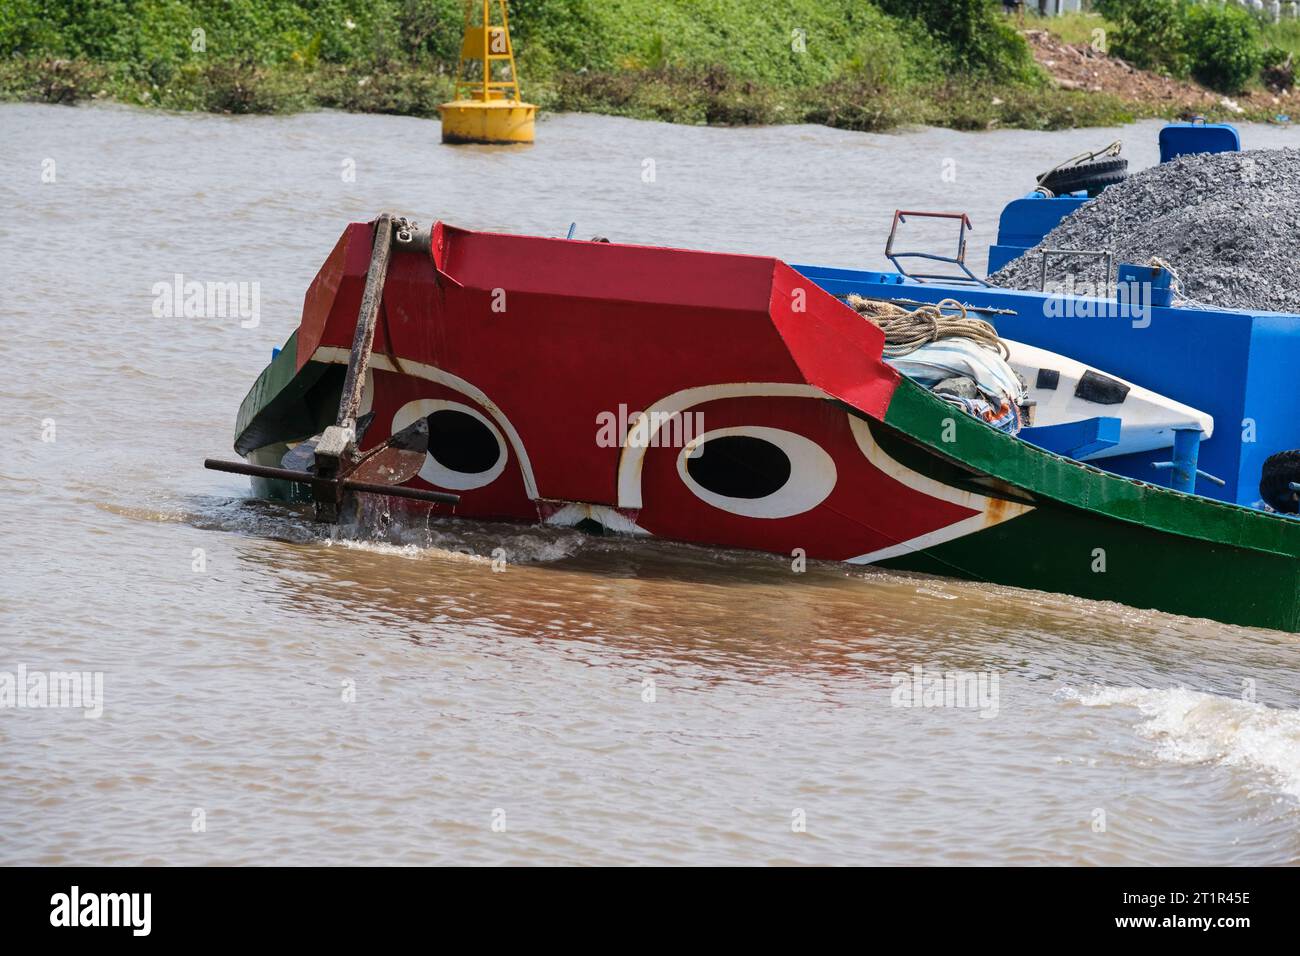 Traffico fluviale sul fiume Saigon, Vietnam. Gli occhi neri nel cerchio bianco sulla prua della barca sono la tradizionale protezione contro gli spiriti del fiume malvagio. Foto Stock